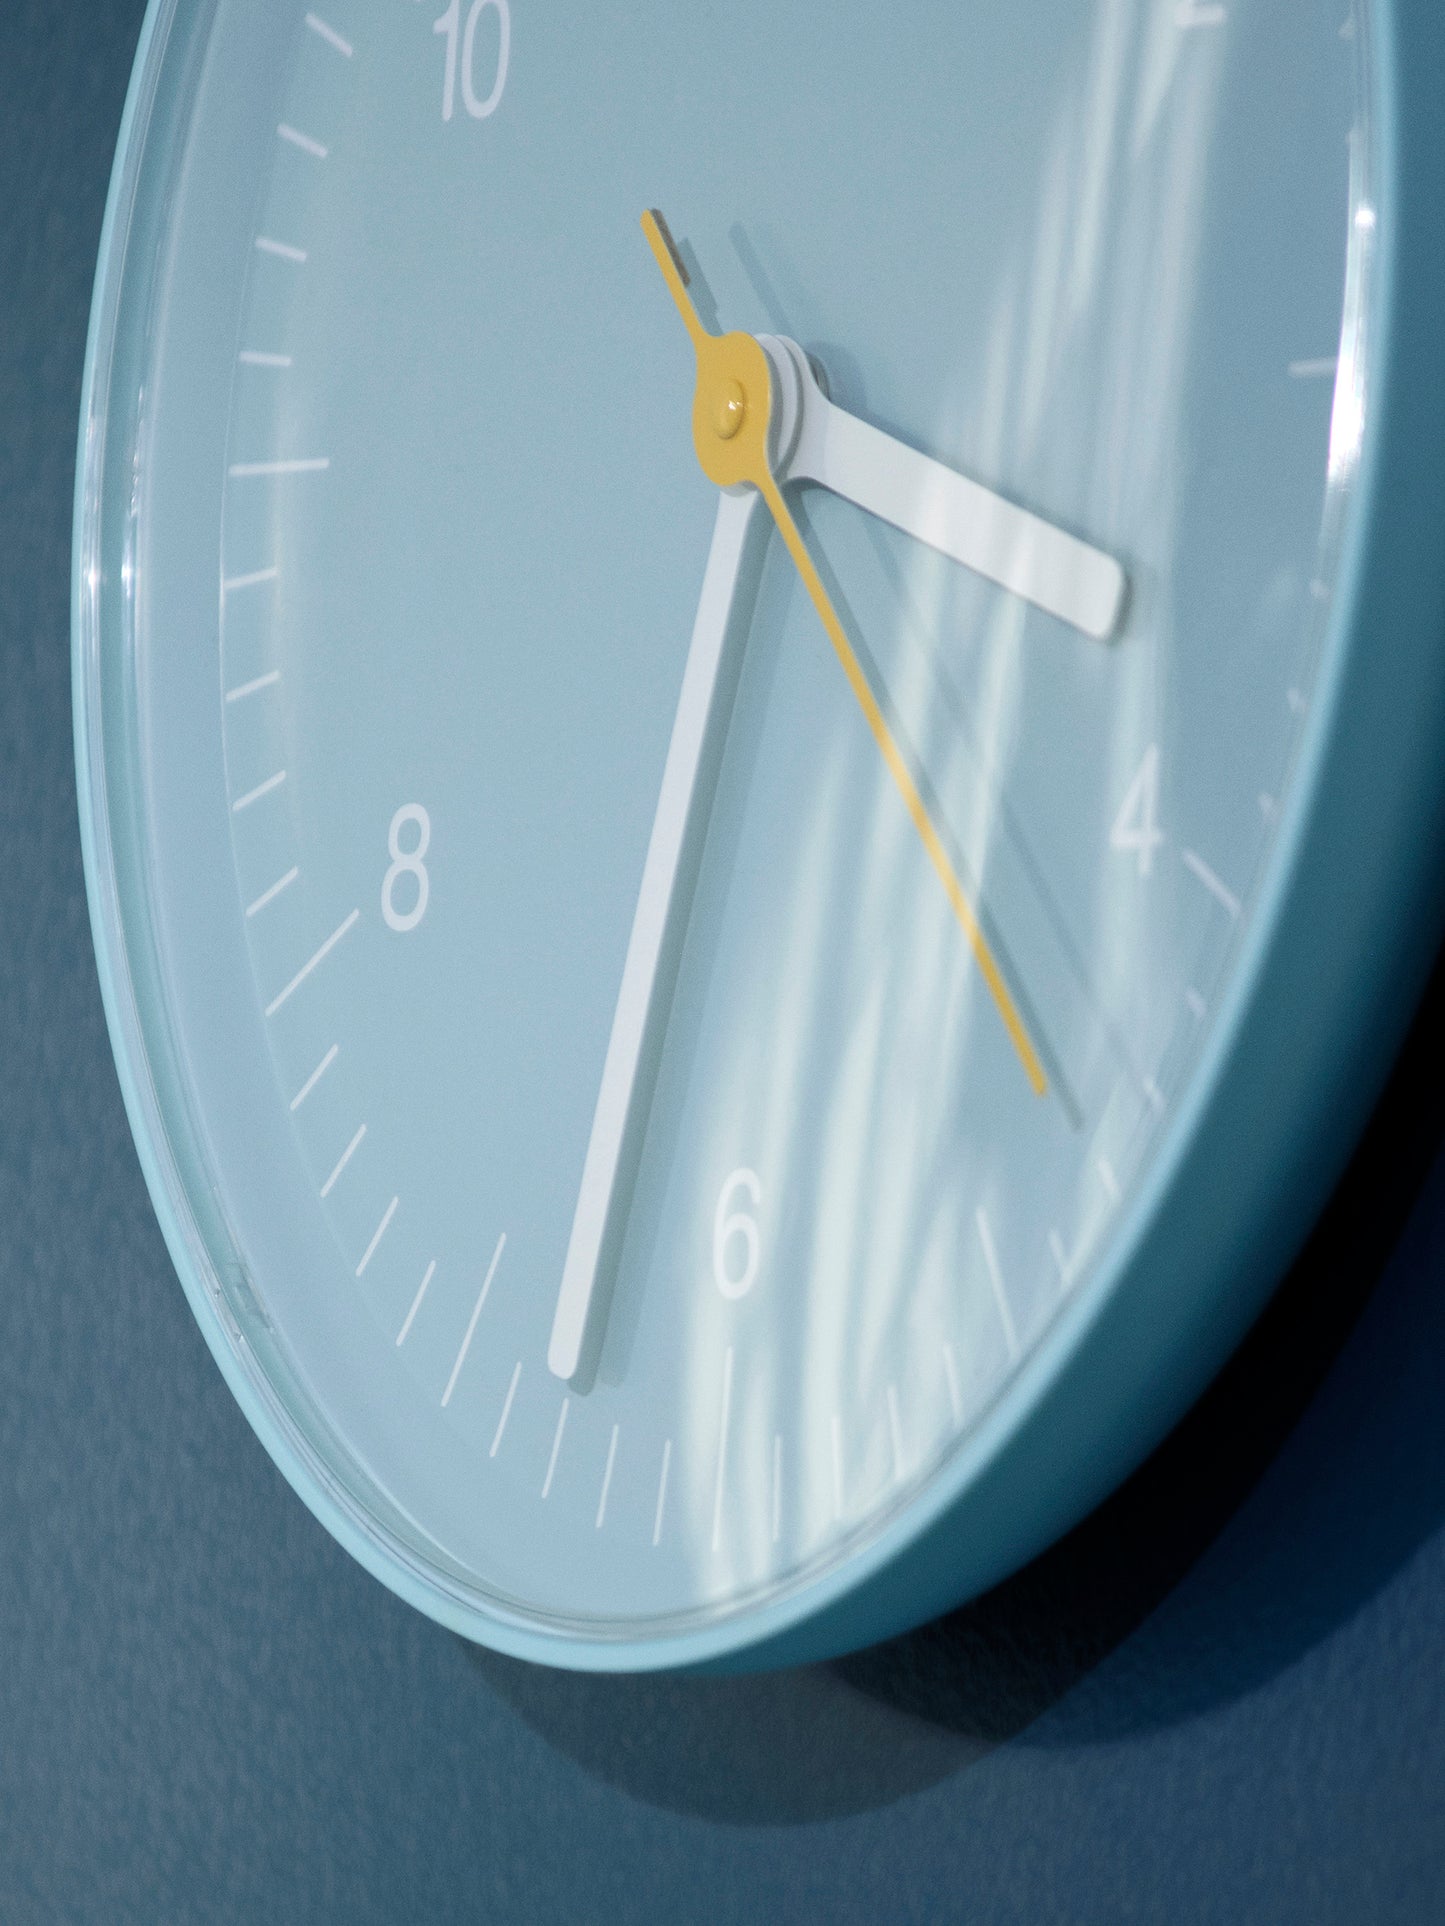 HAY ヘイ WALL CLOCK ウォールクロック 壁掛け時計 時計 おしゃれ かわいい 北欧 ジャスパー・モリソン ブルー ホワイト ブラック グリーン